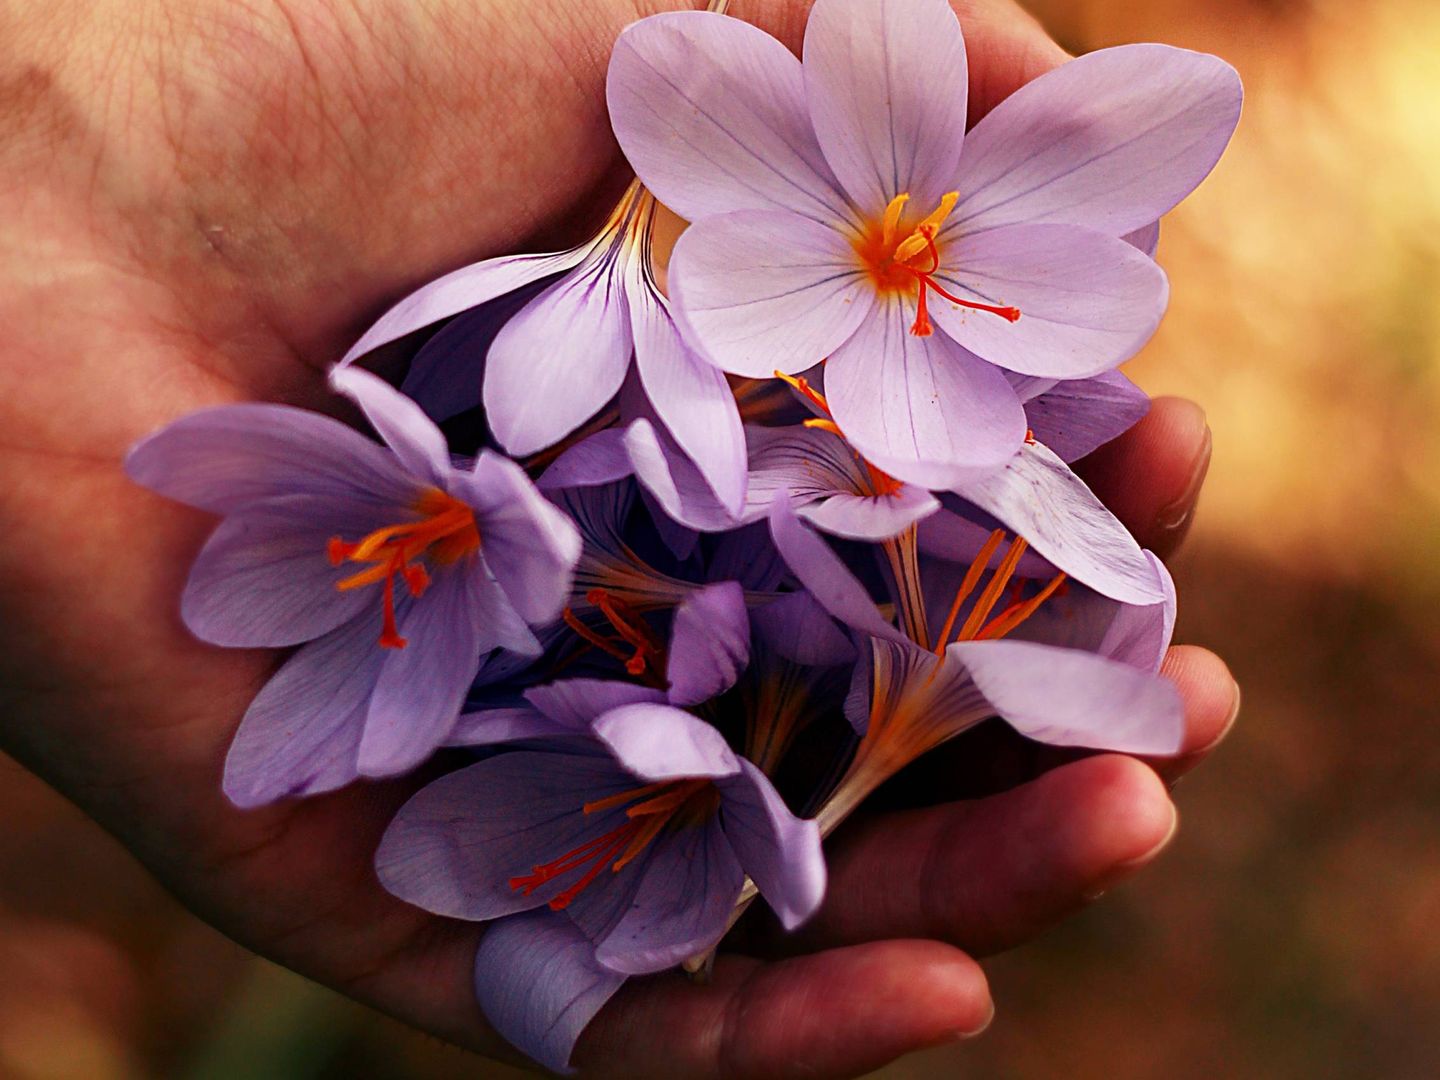 Las flores y sus aromas ayudarán a tu piel. (Unsplash)